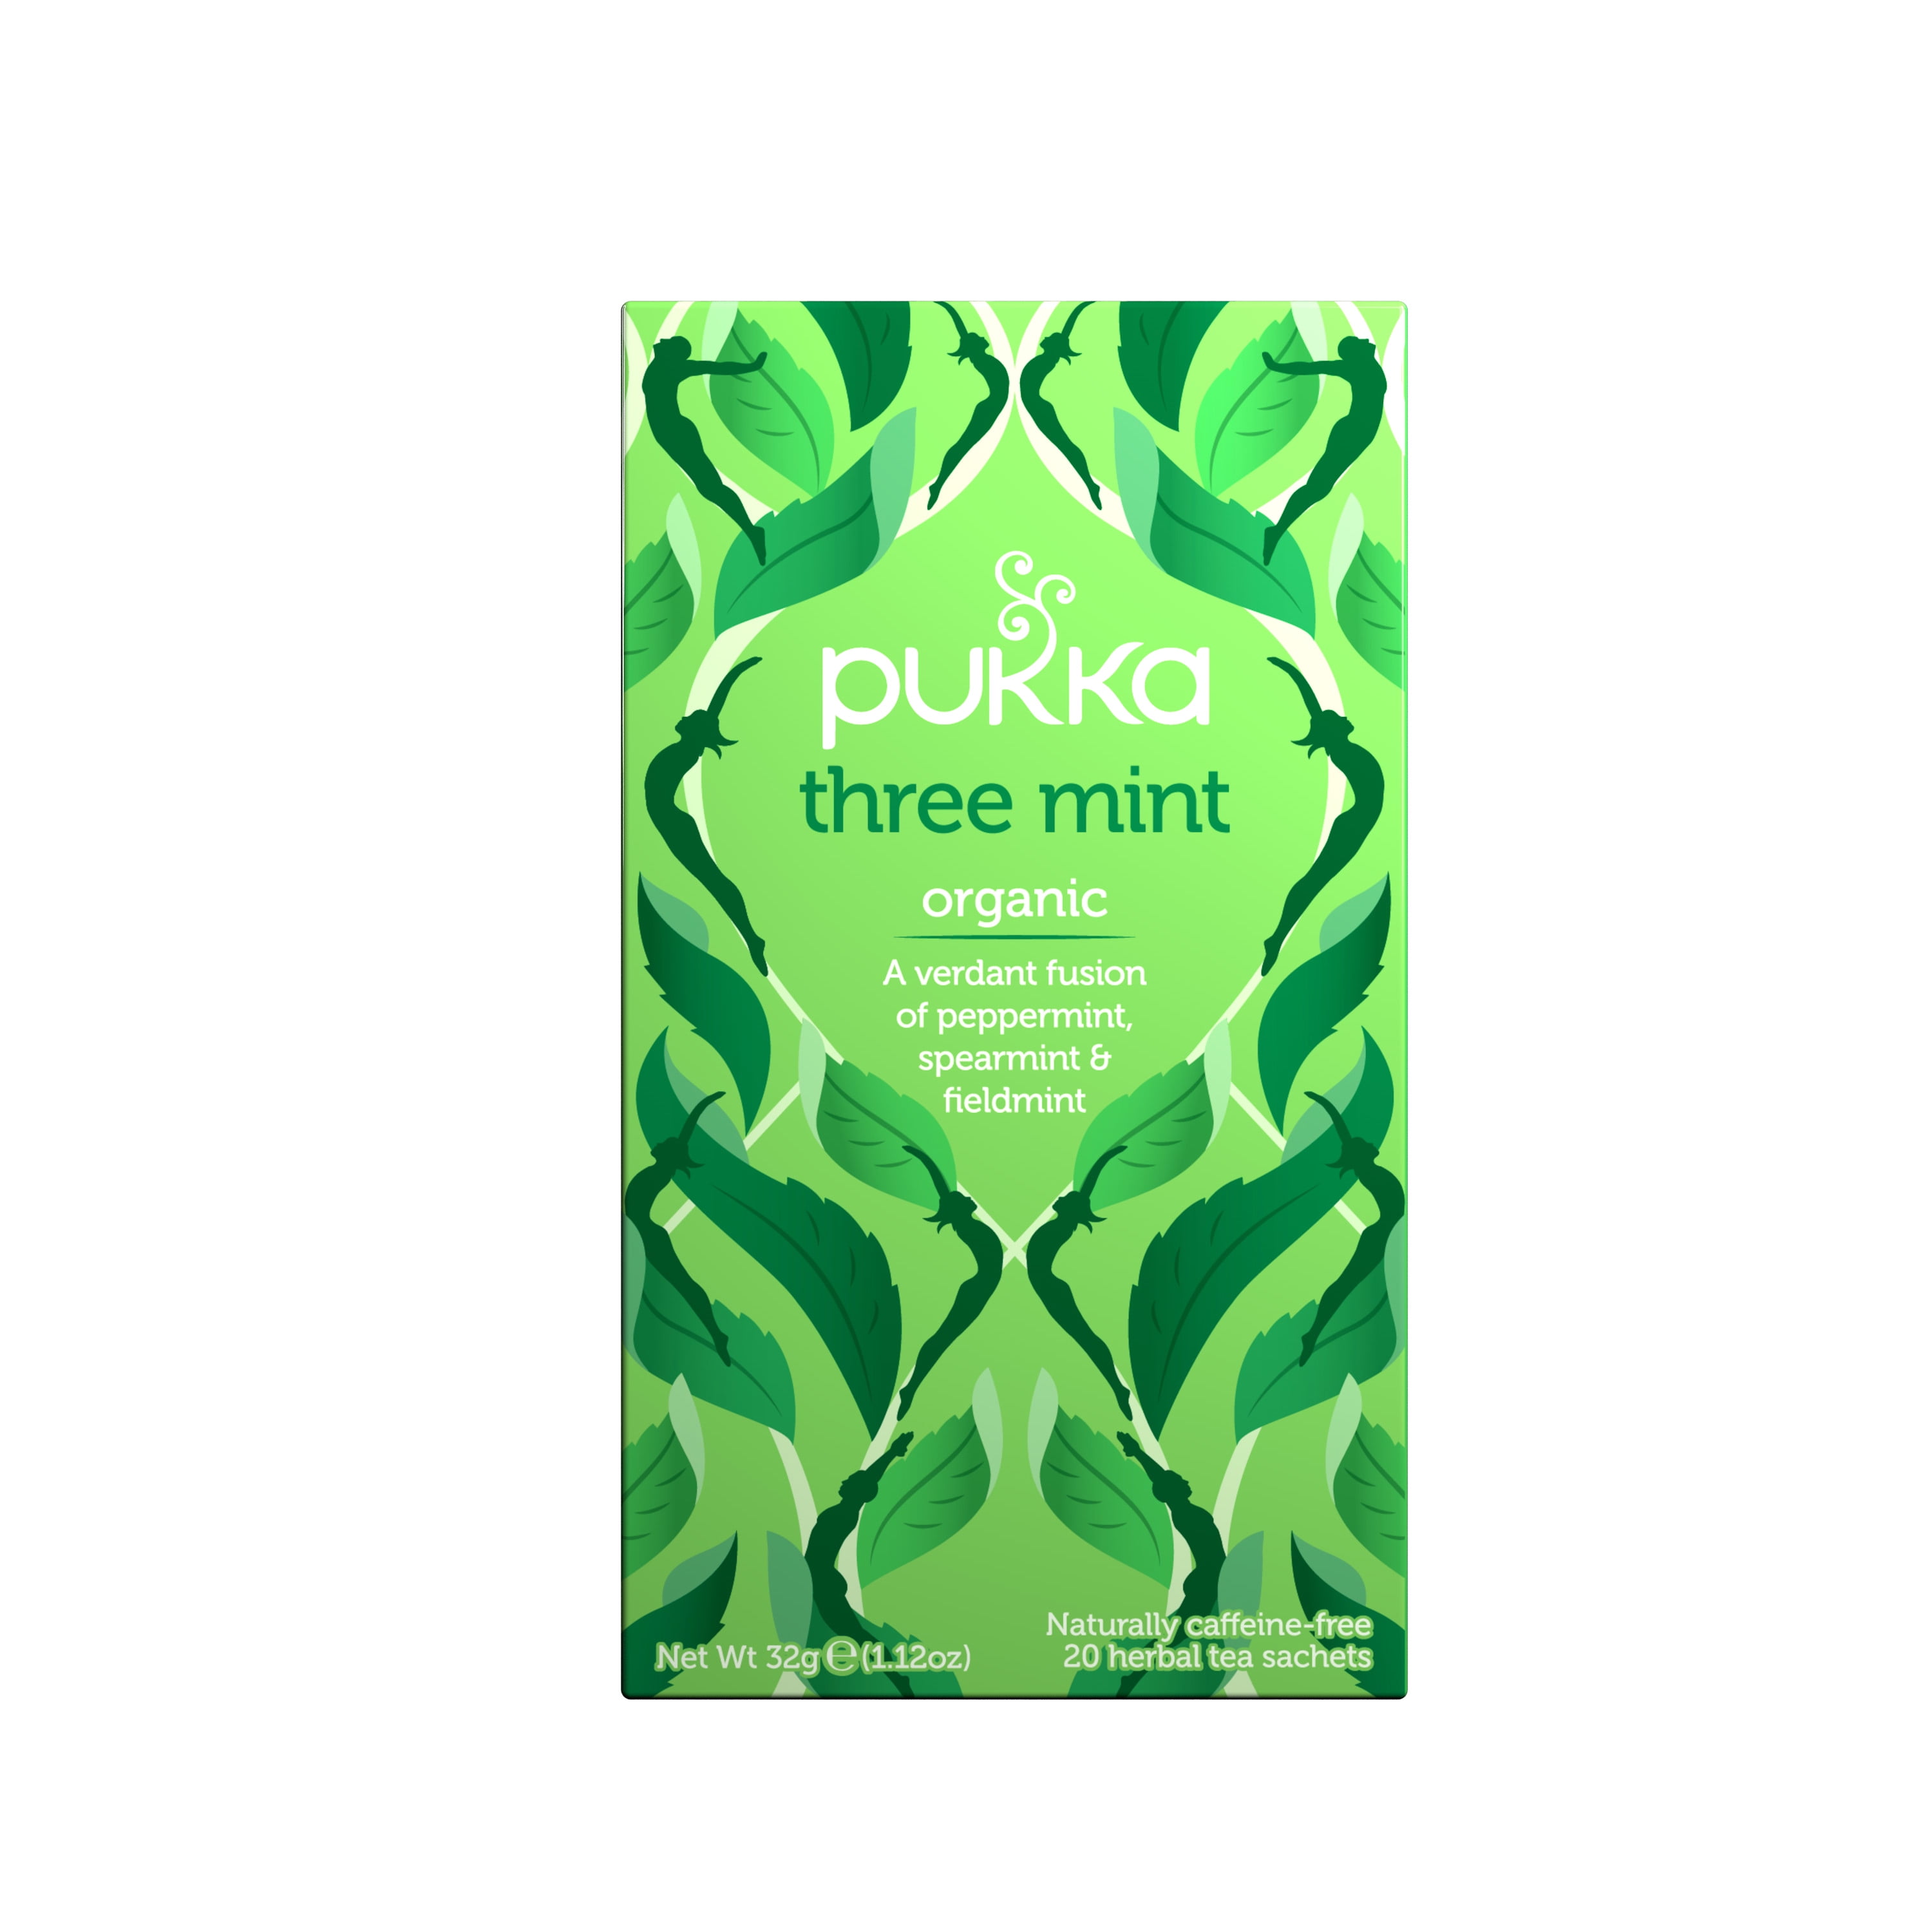 Assortment of 3 Pukka Herbs infusions - Pukka herbs